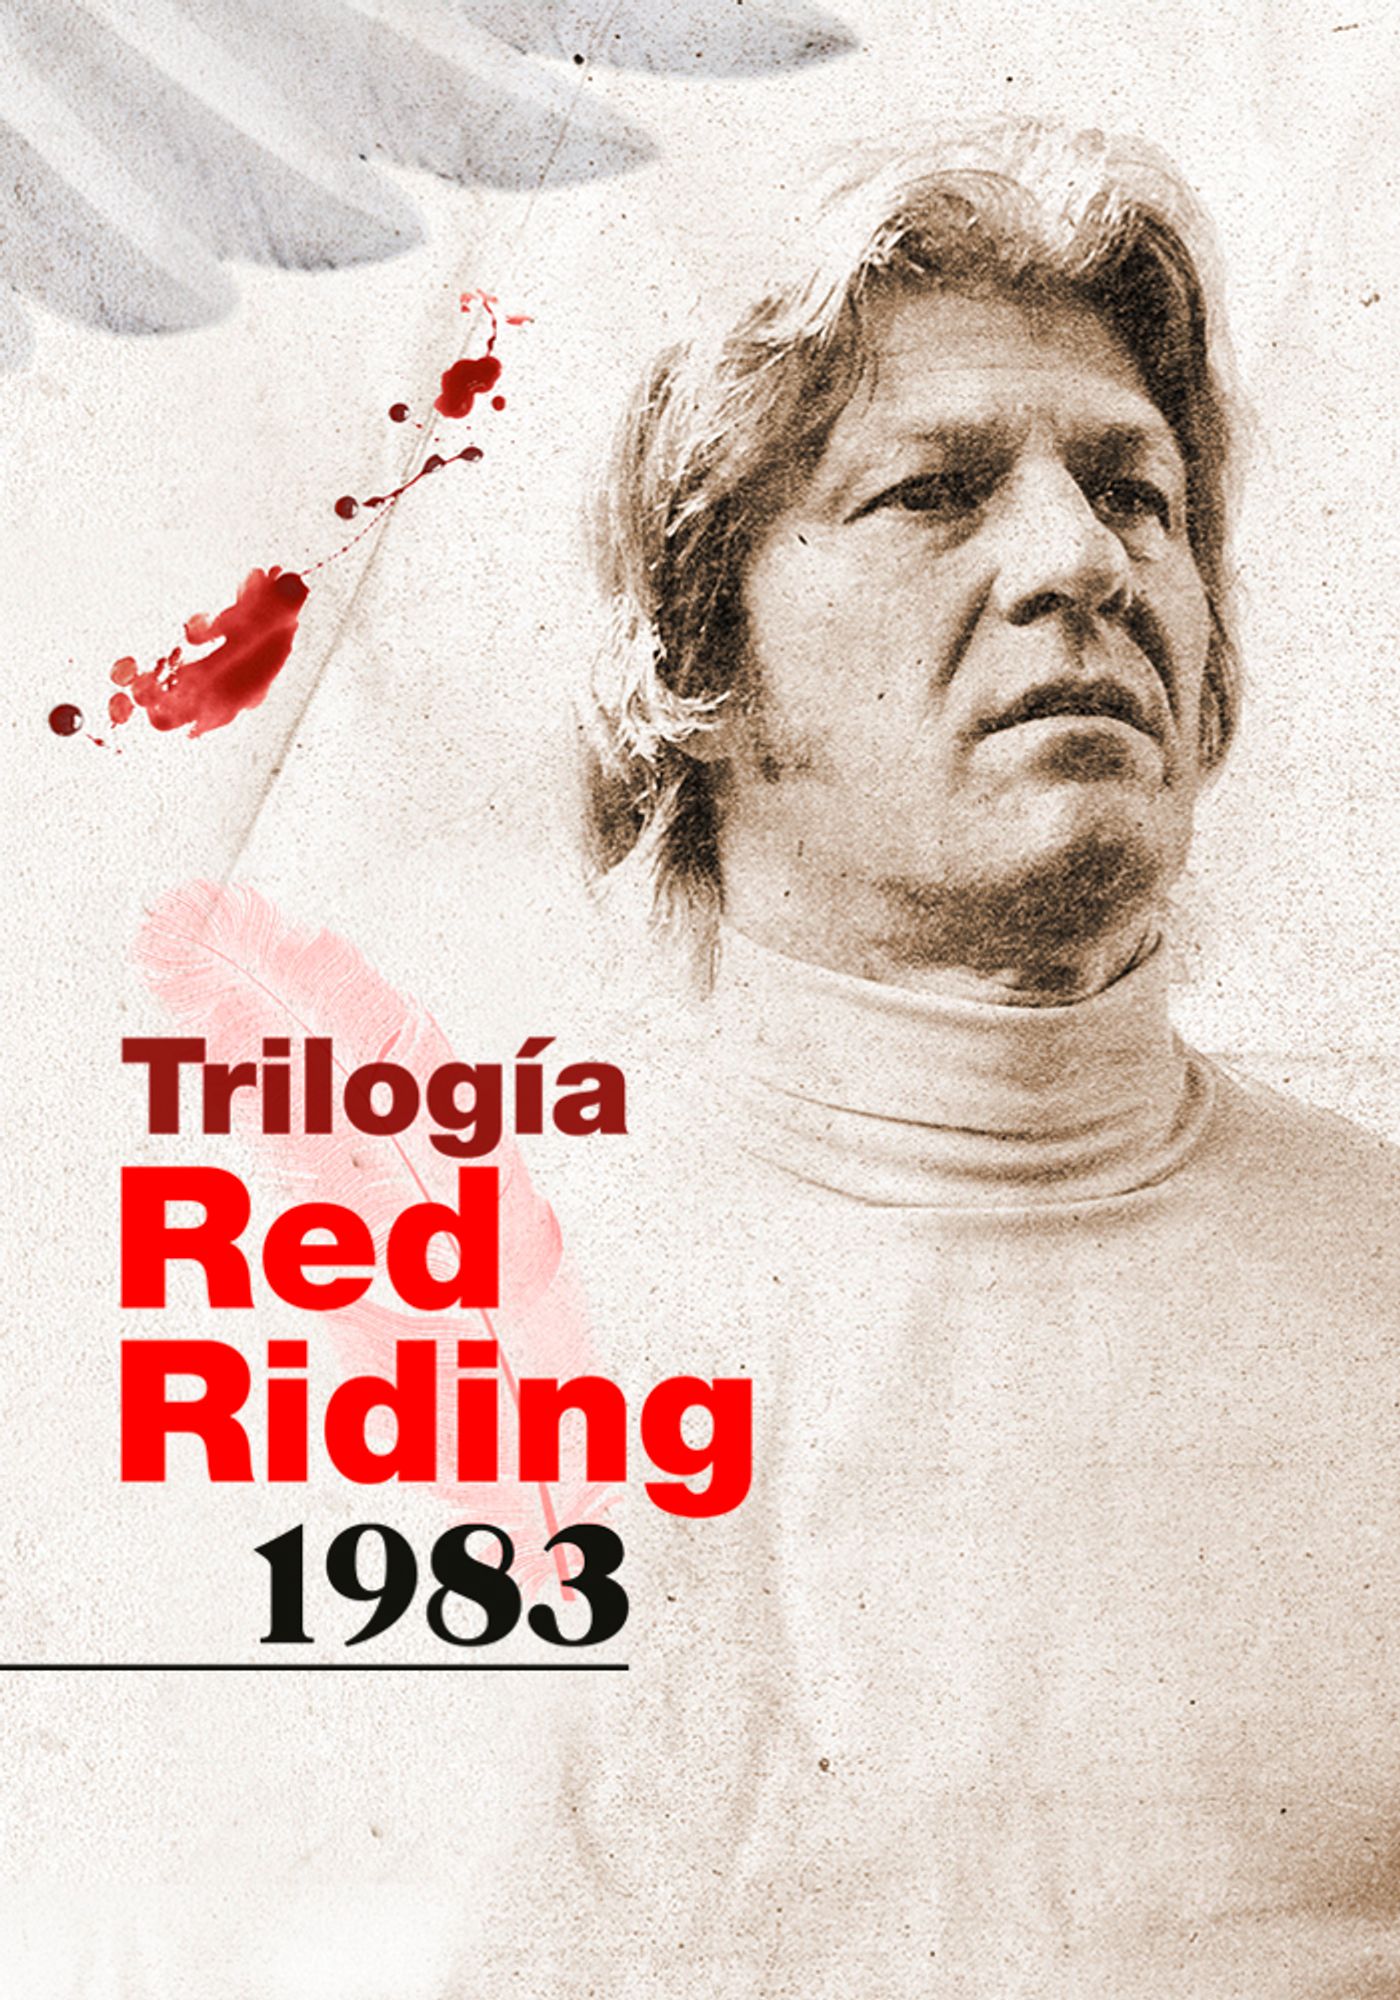 TrilogiaRedRiding1983_MITELE-PLUS_700x1000